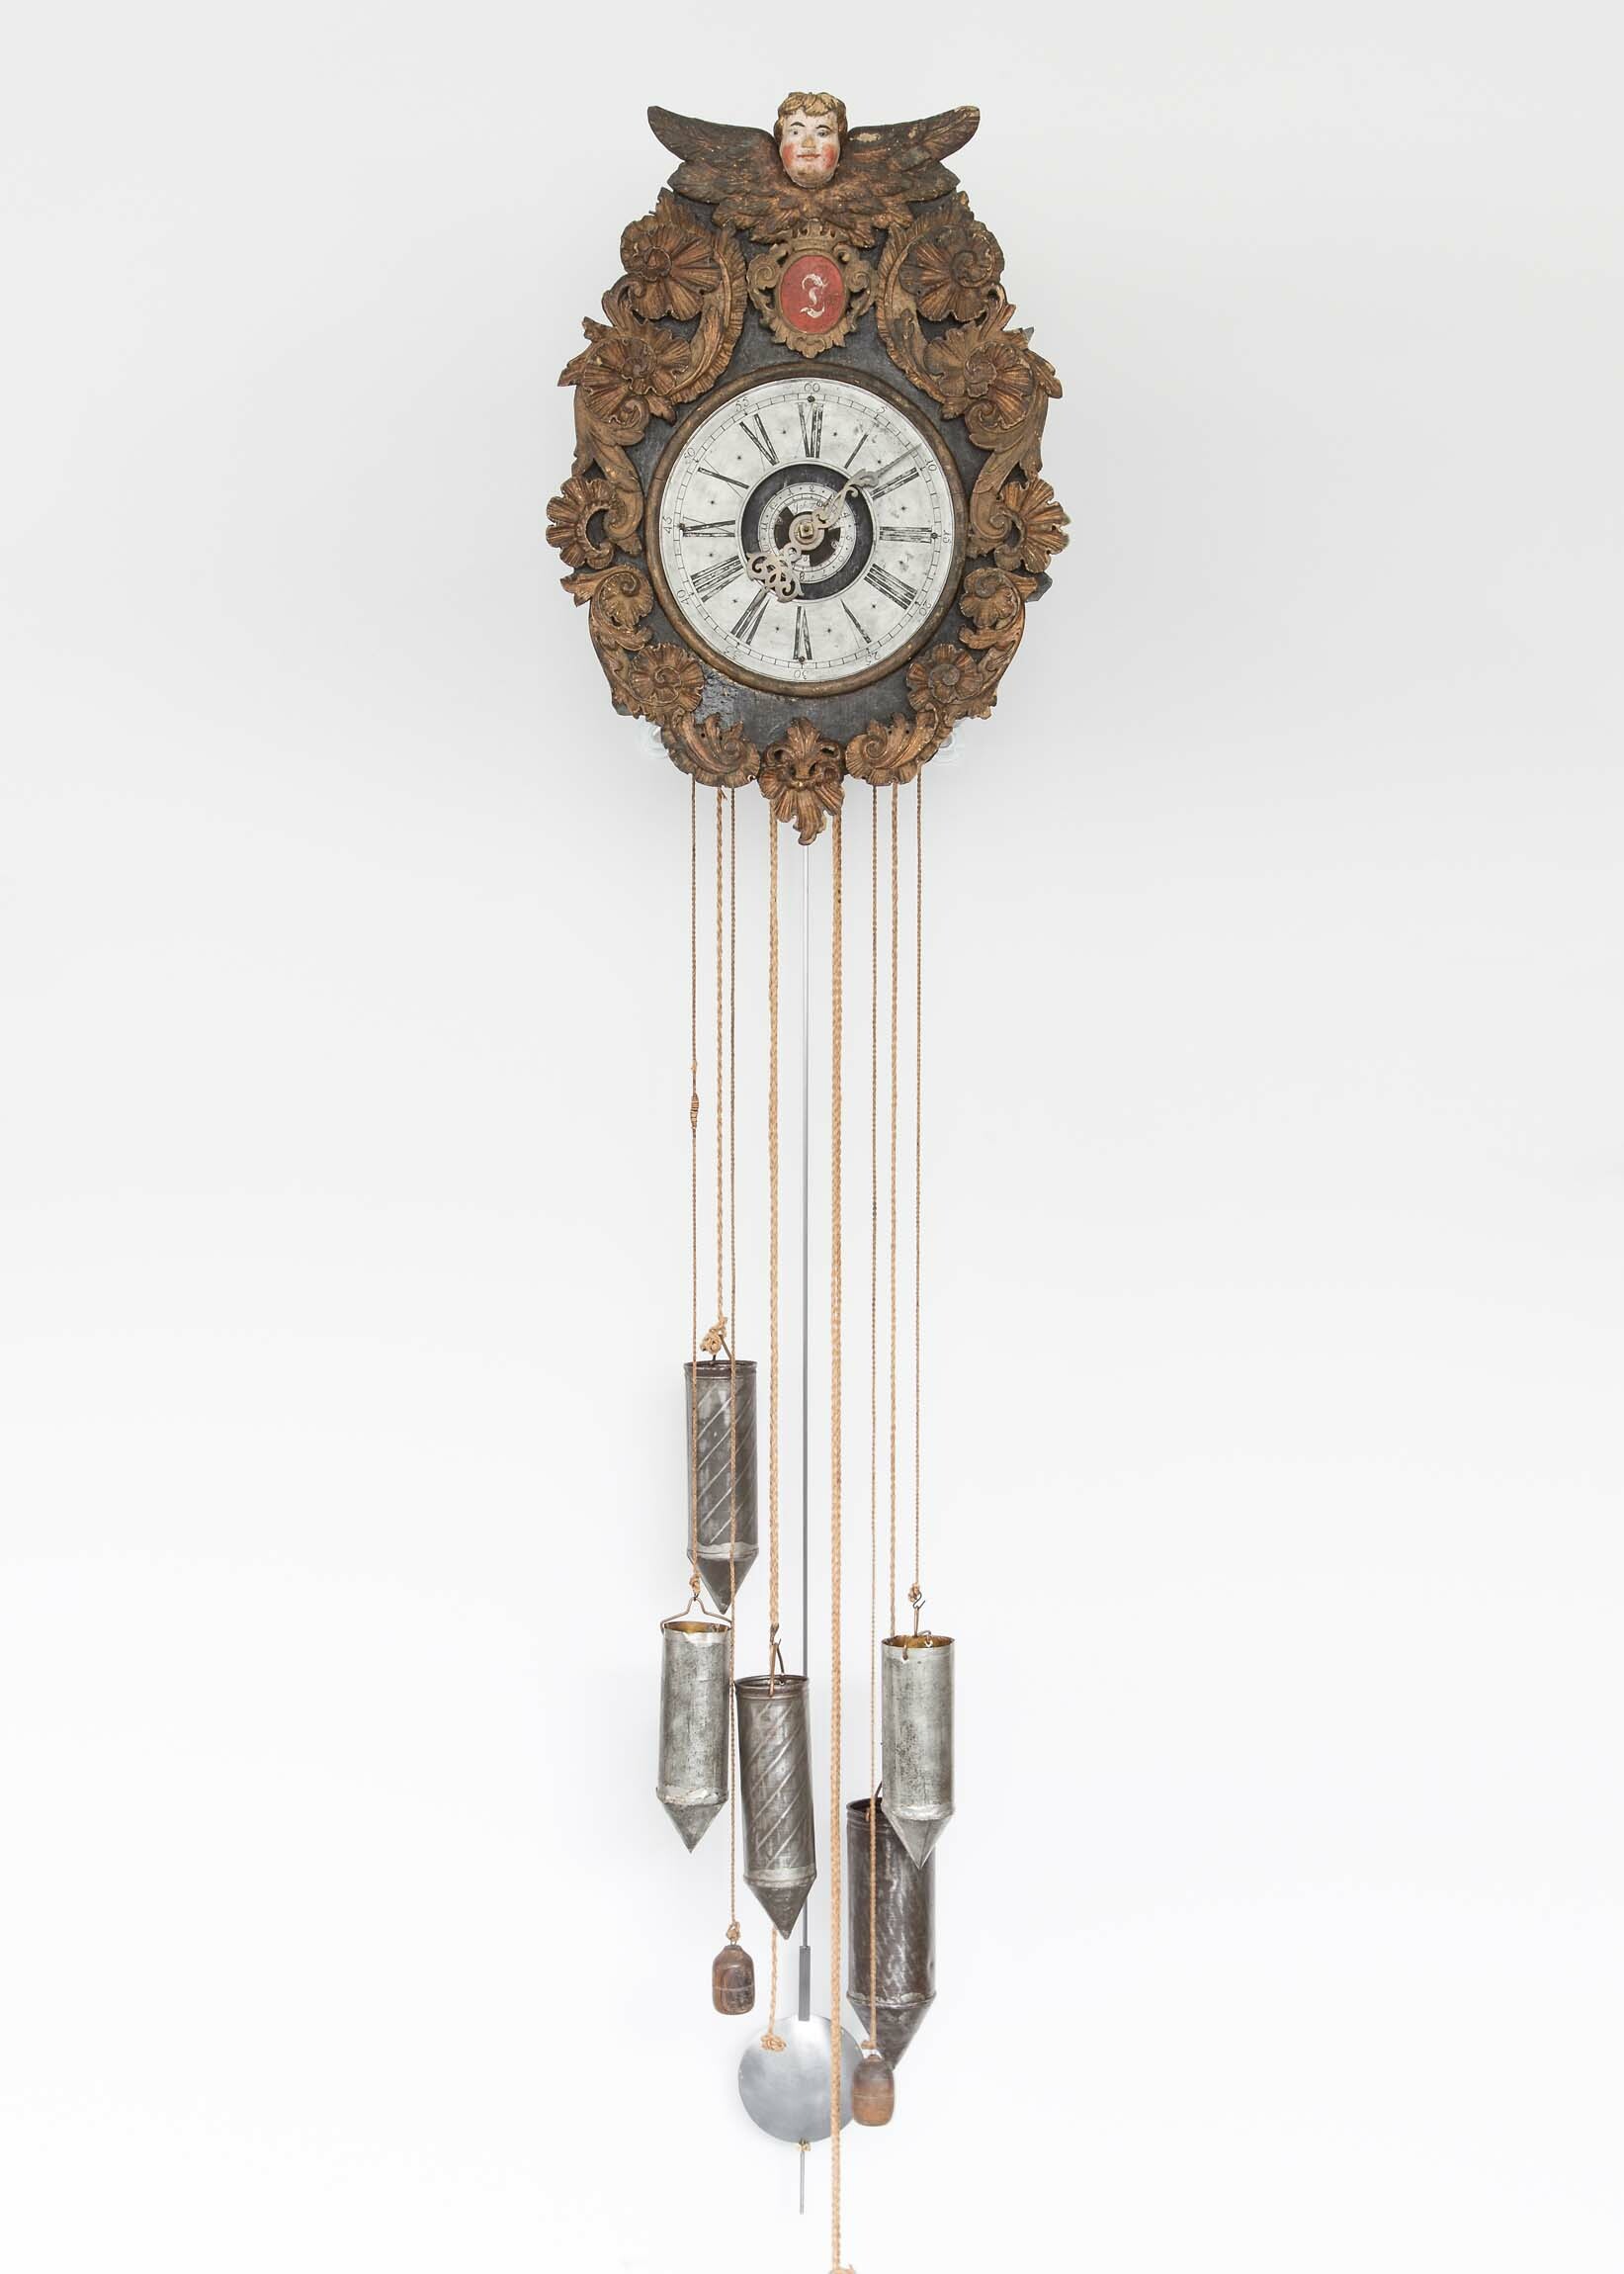 Holzräderuhr, Johannes Thürauf, Mailheim (Franken), 1766 (Deutsches Uhrenmuseum CC BY-SA)